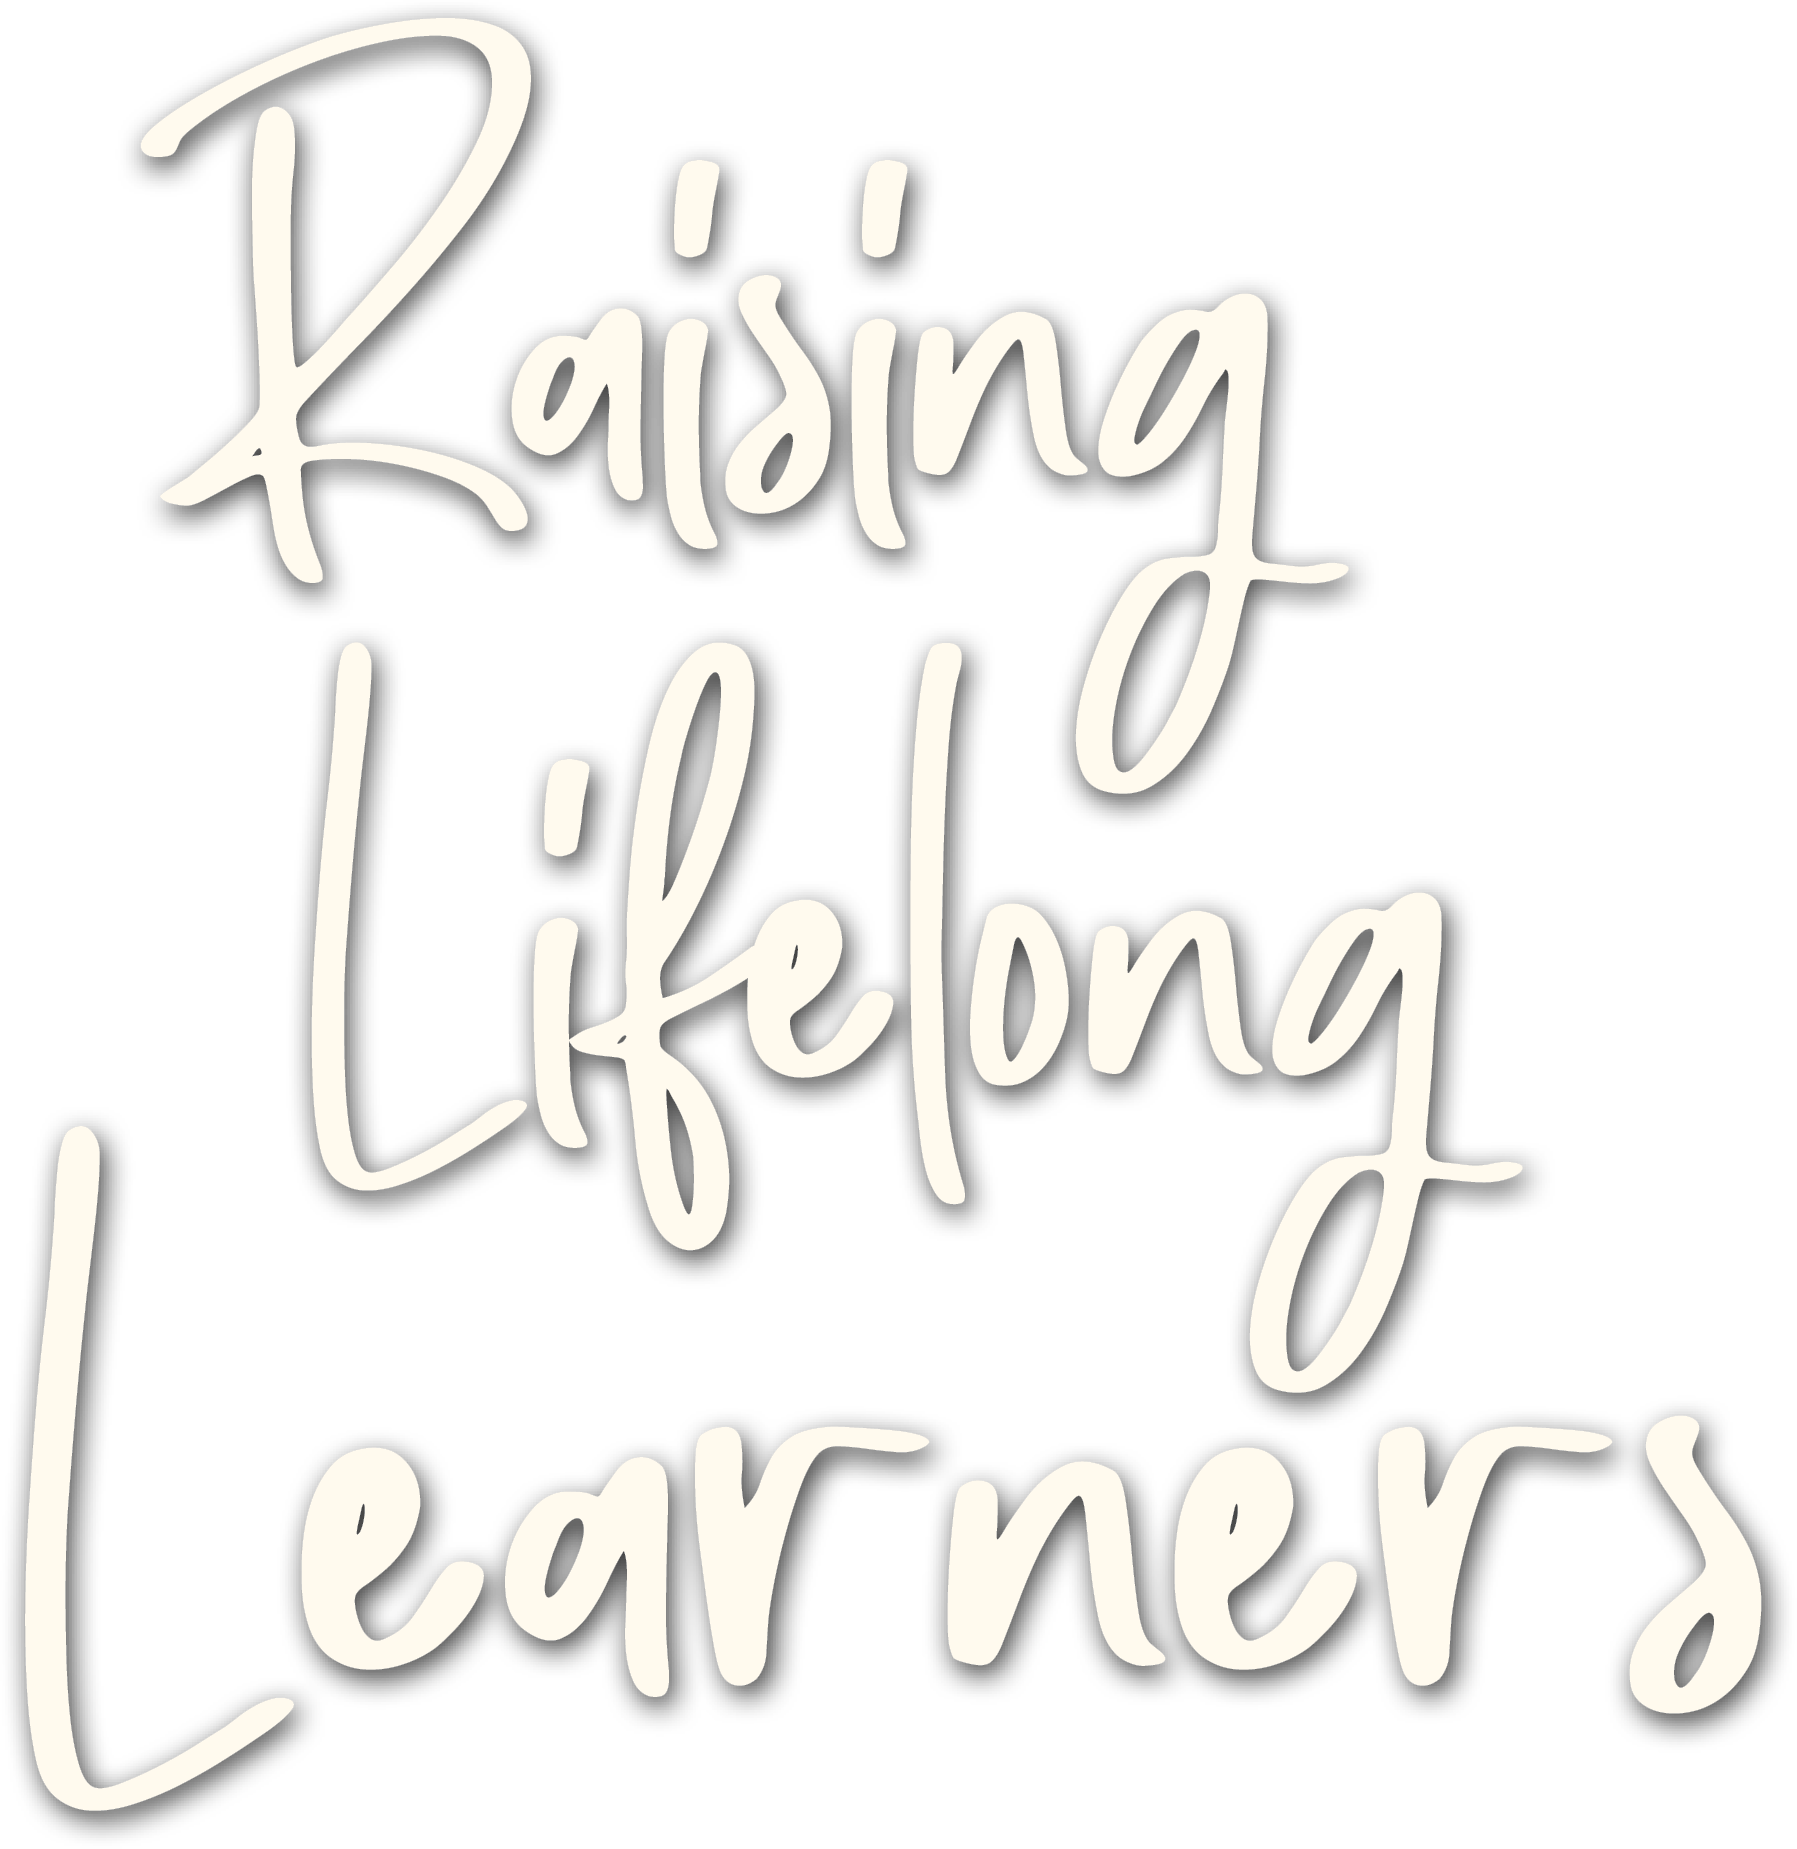 "Raising Lifelong Learners"